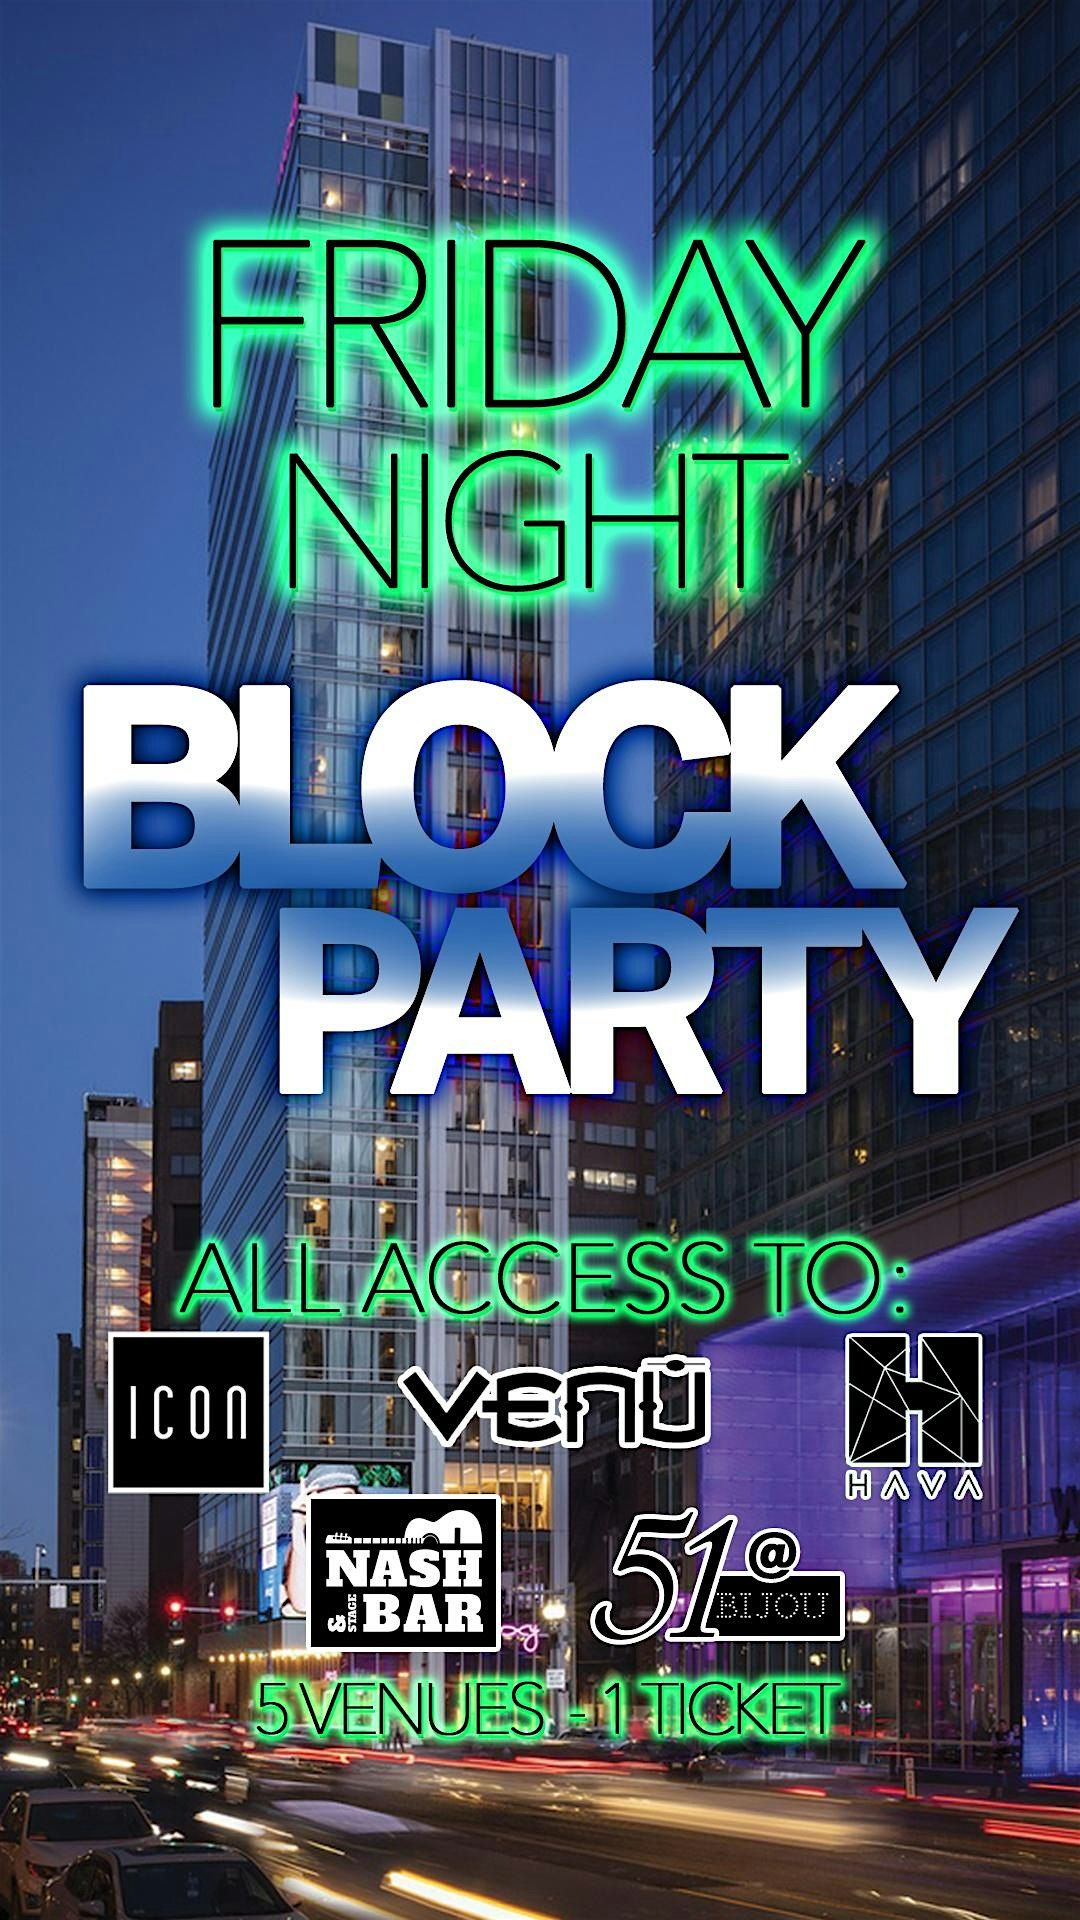 Friday Night BLOCK PARTY -Entry into Icon, 51 @ Bijou, Nash, Hava & Venu